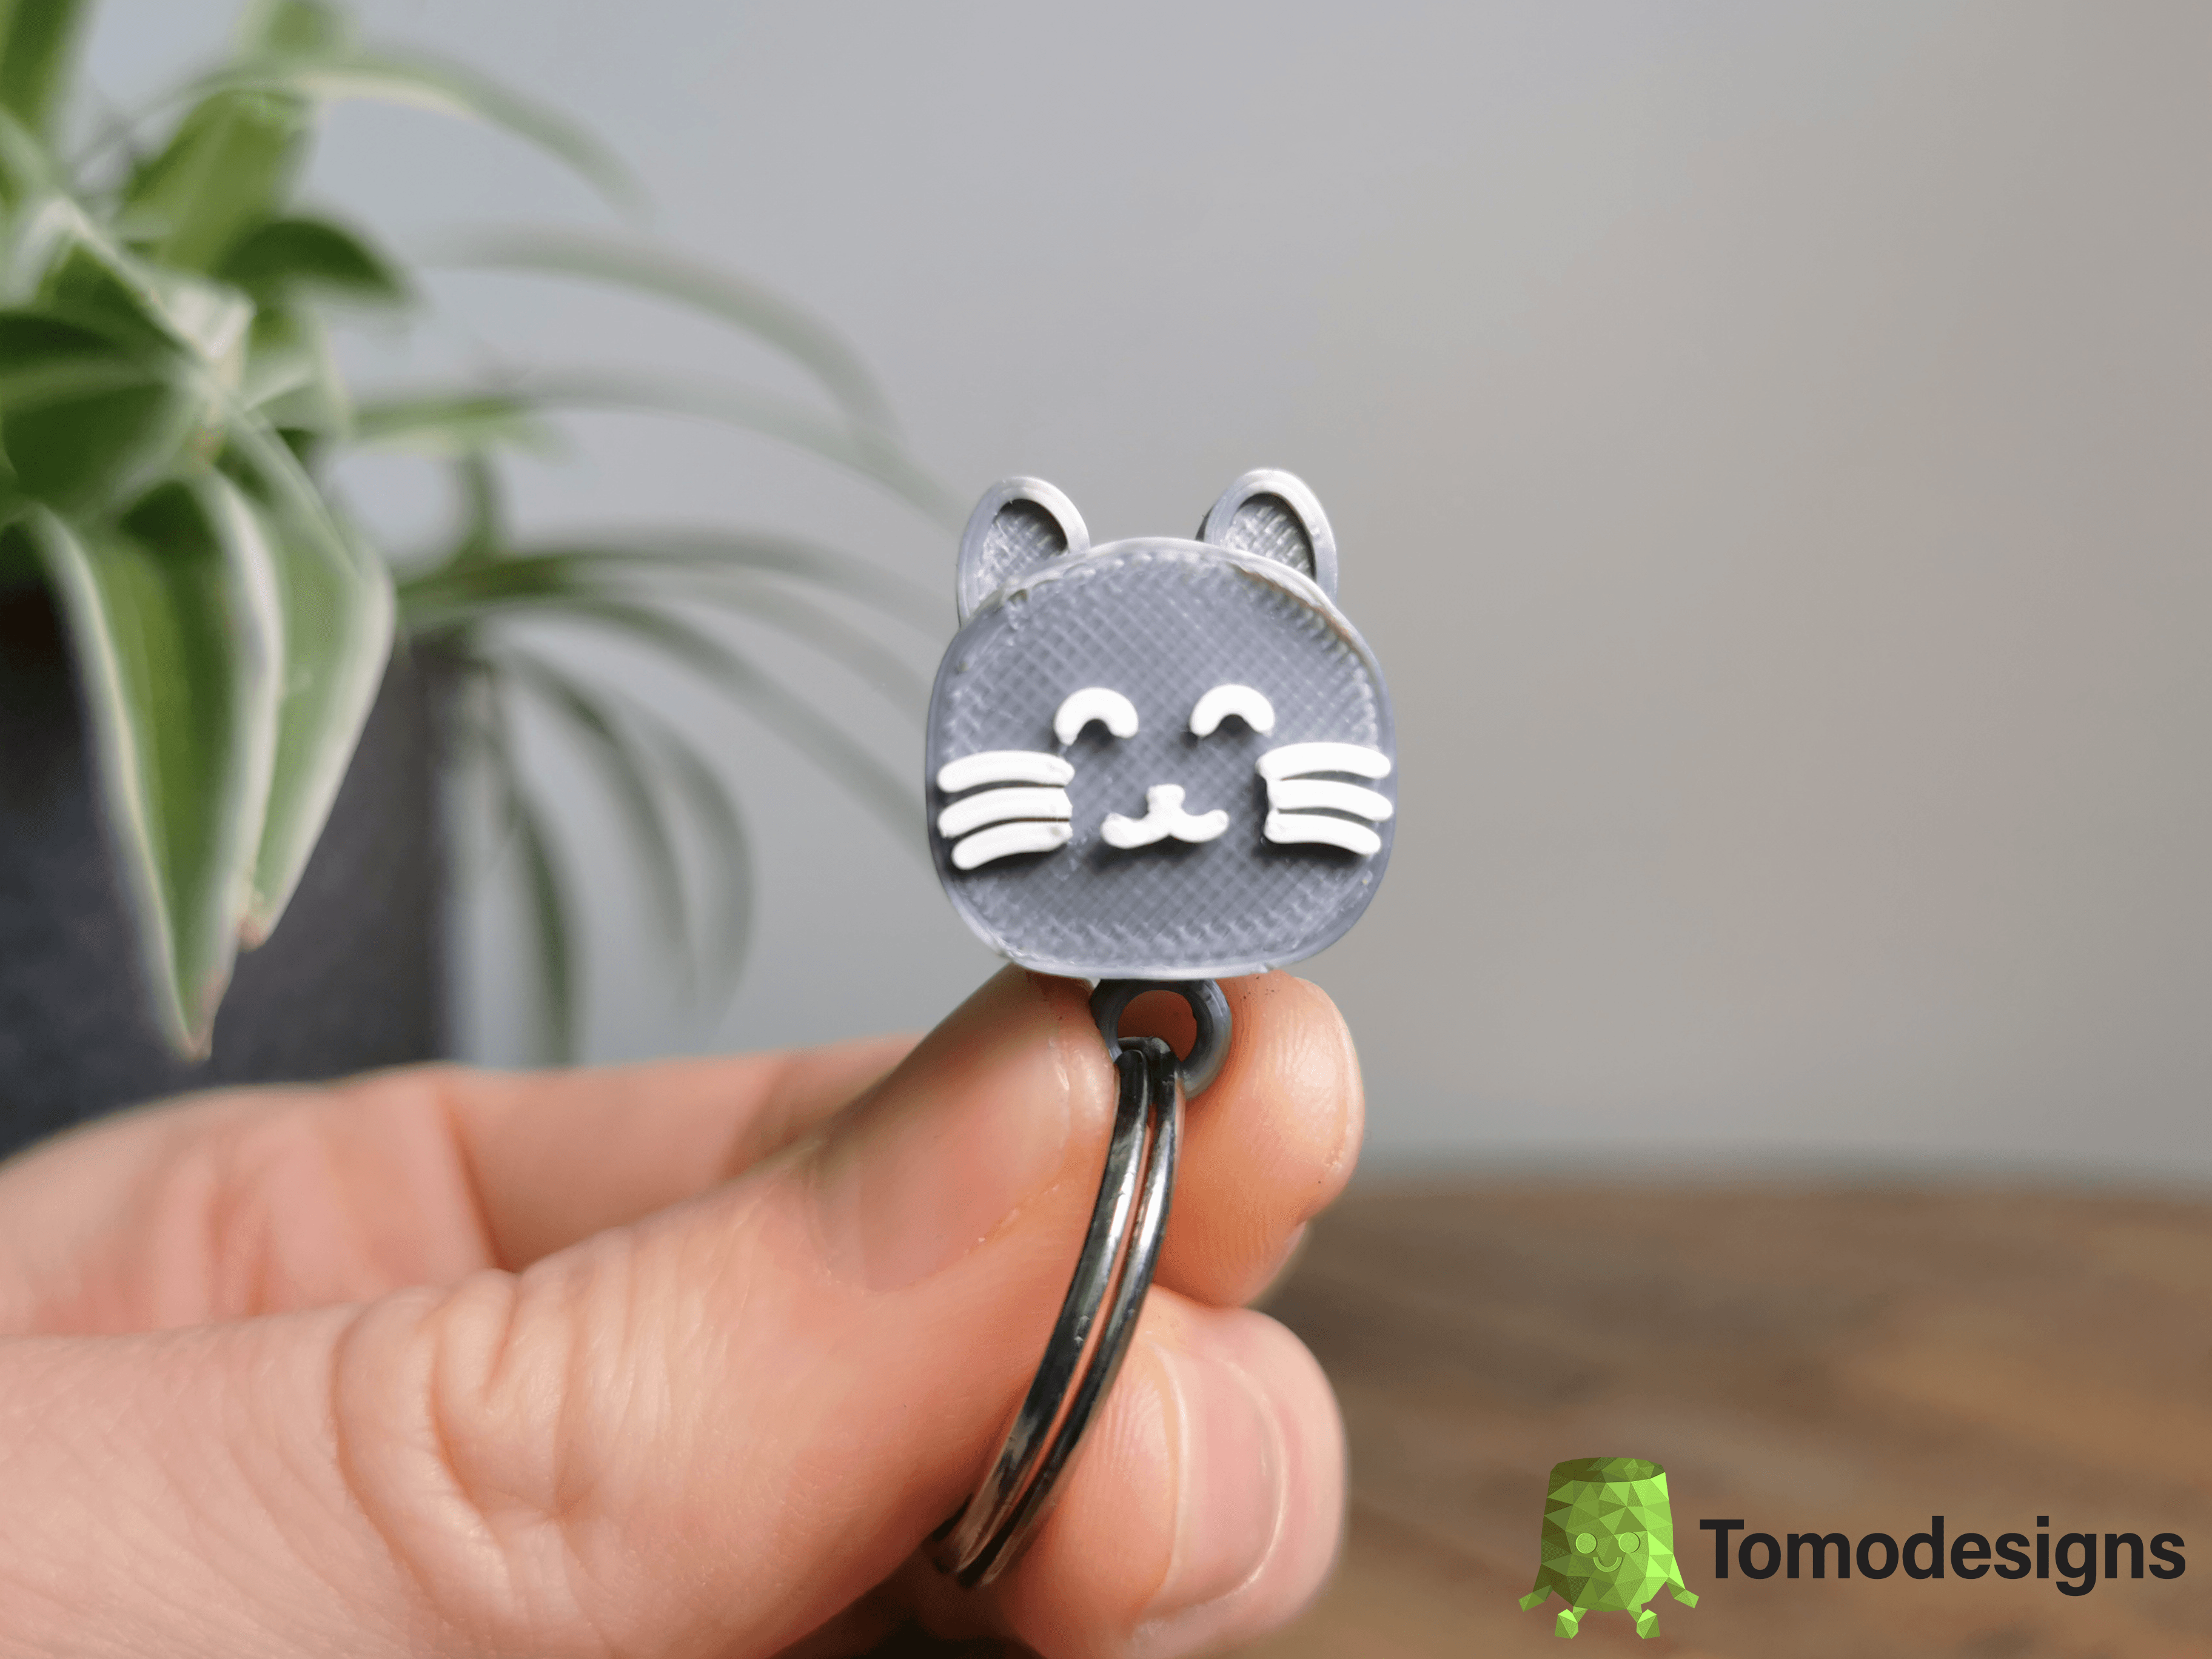 Mini Flip Cat Ears Keychain 3d model